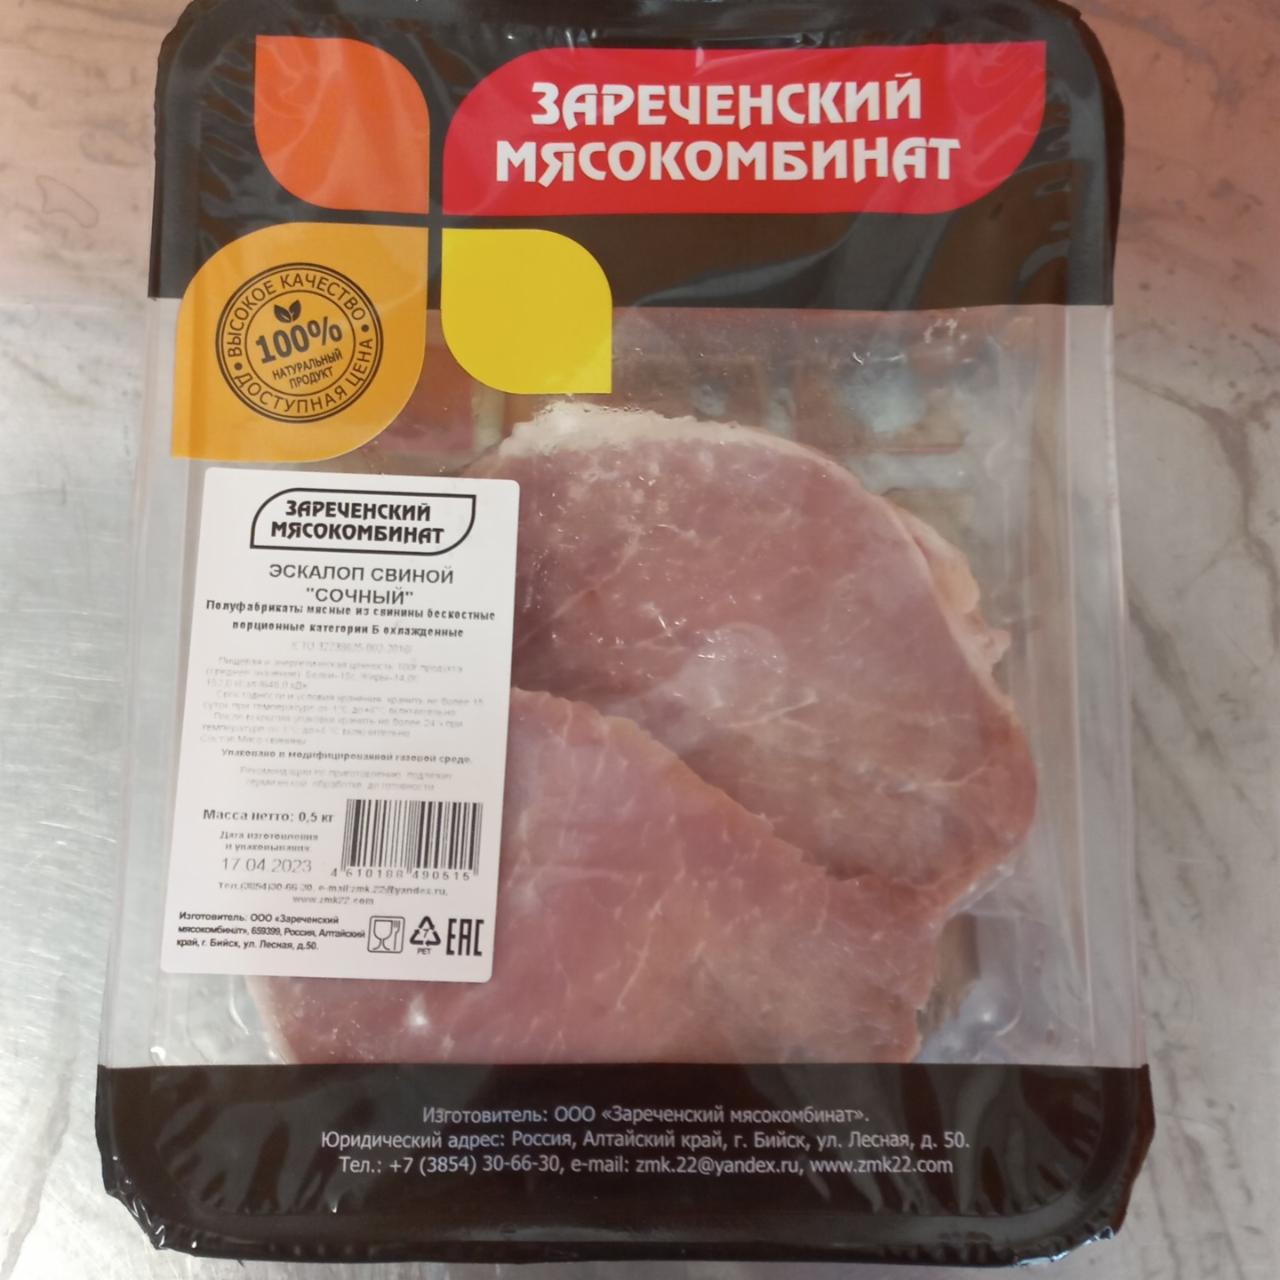 Фото - эскалоп свинной сочный Зареченский мясокомбинат